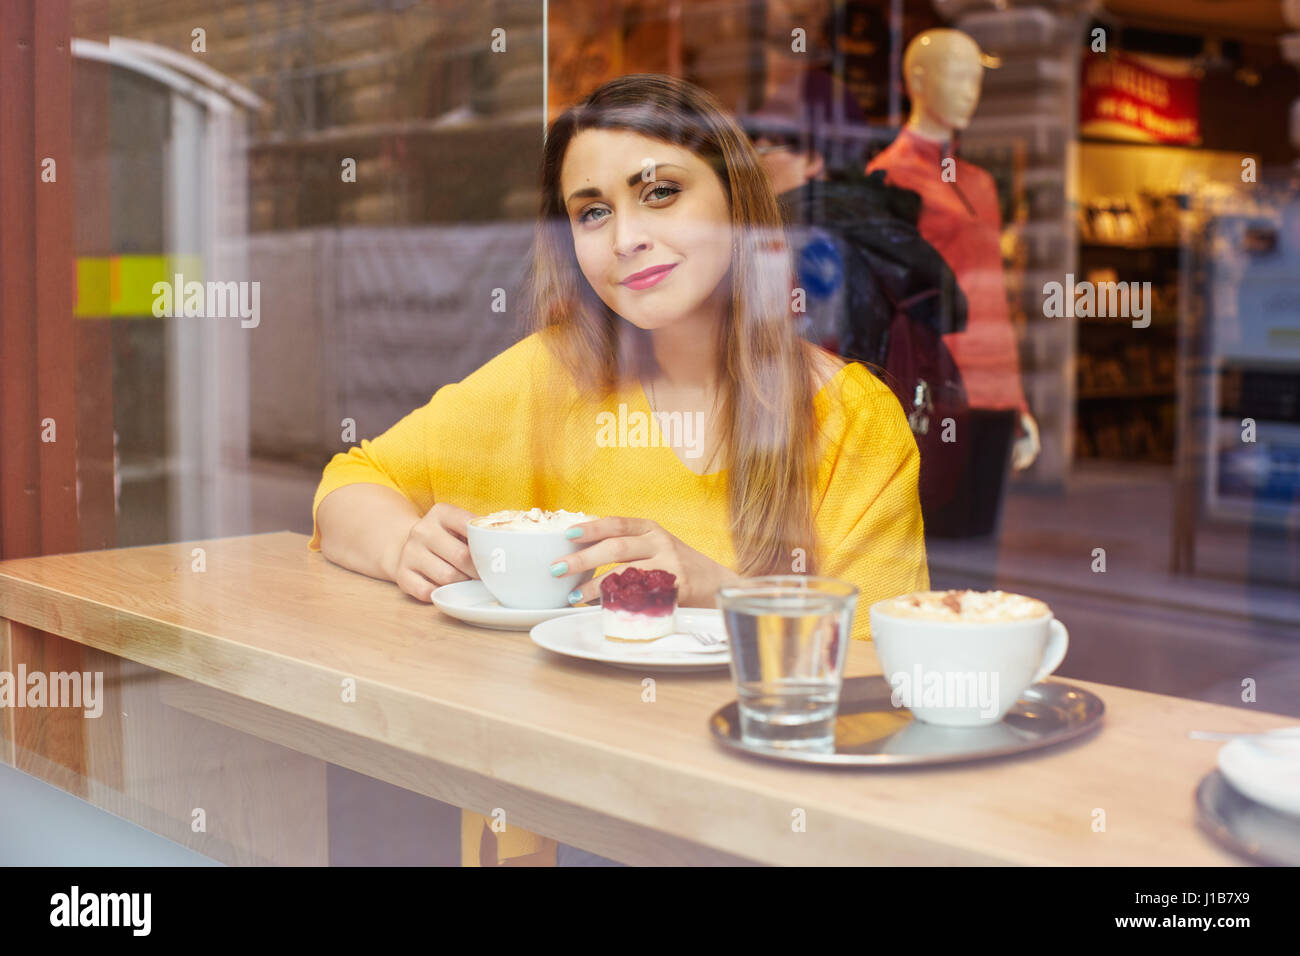 Junge, lächelnde Frau in leuchtendem Gelb Bluse im Café sitzen und schaut durch ein Fenster. Stockfoto